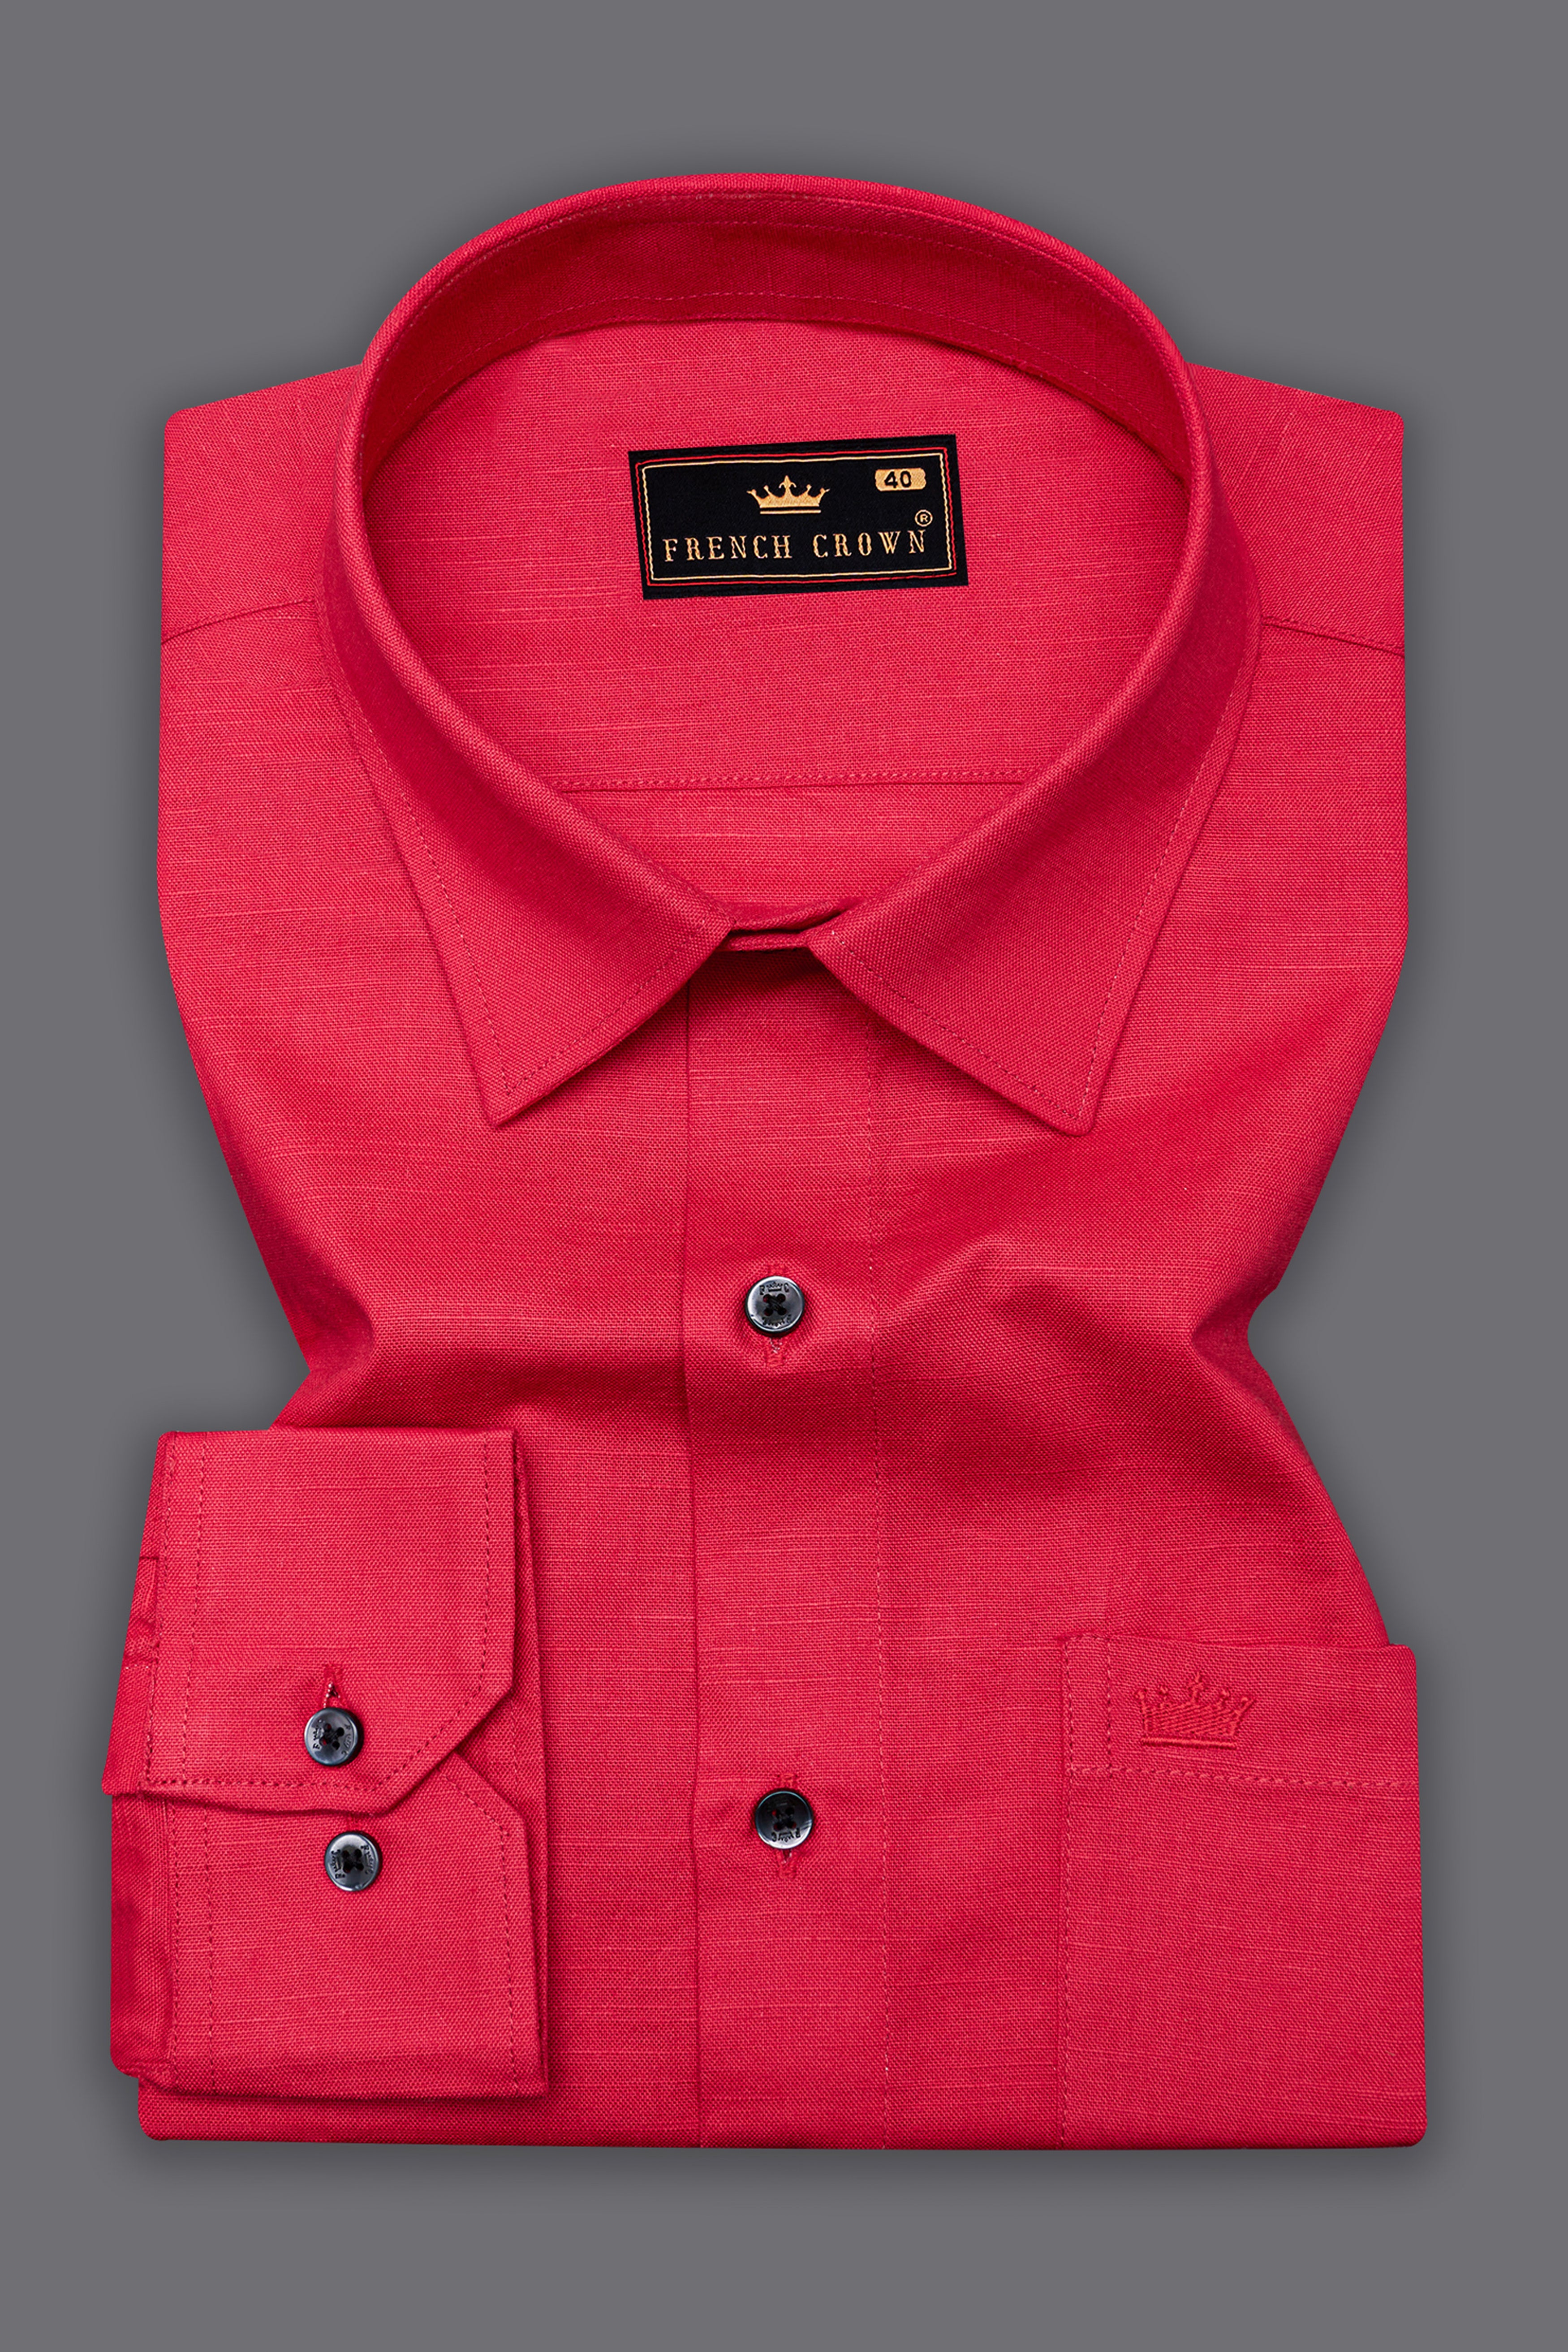 Cardinal Red Luxurious Linen Shirt